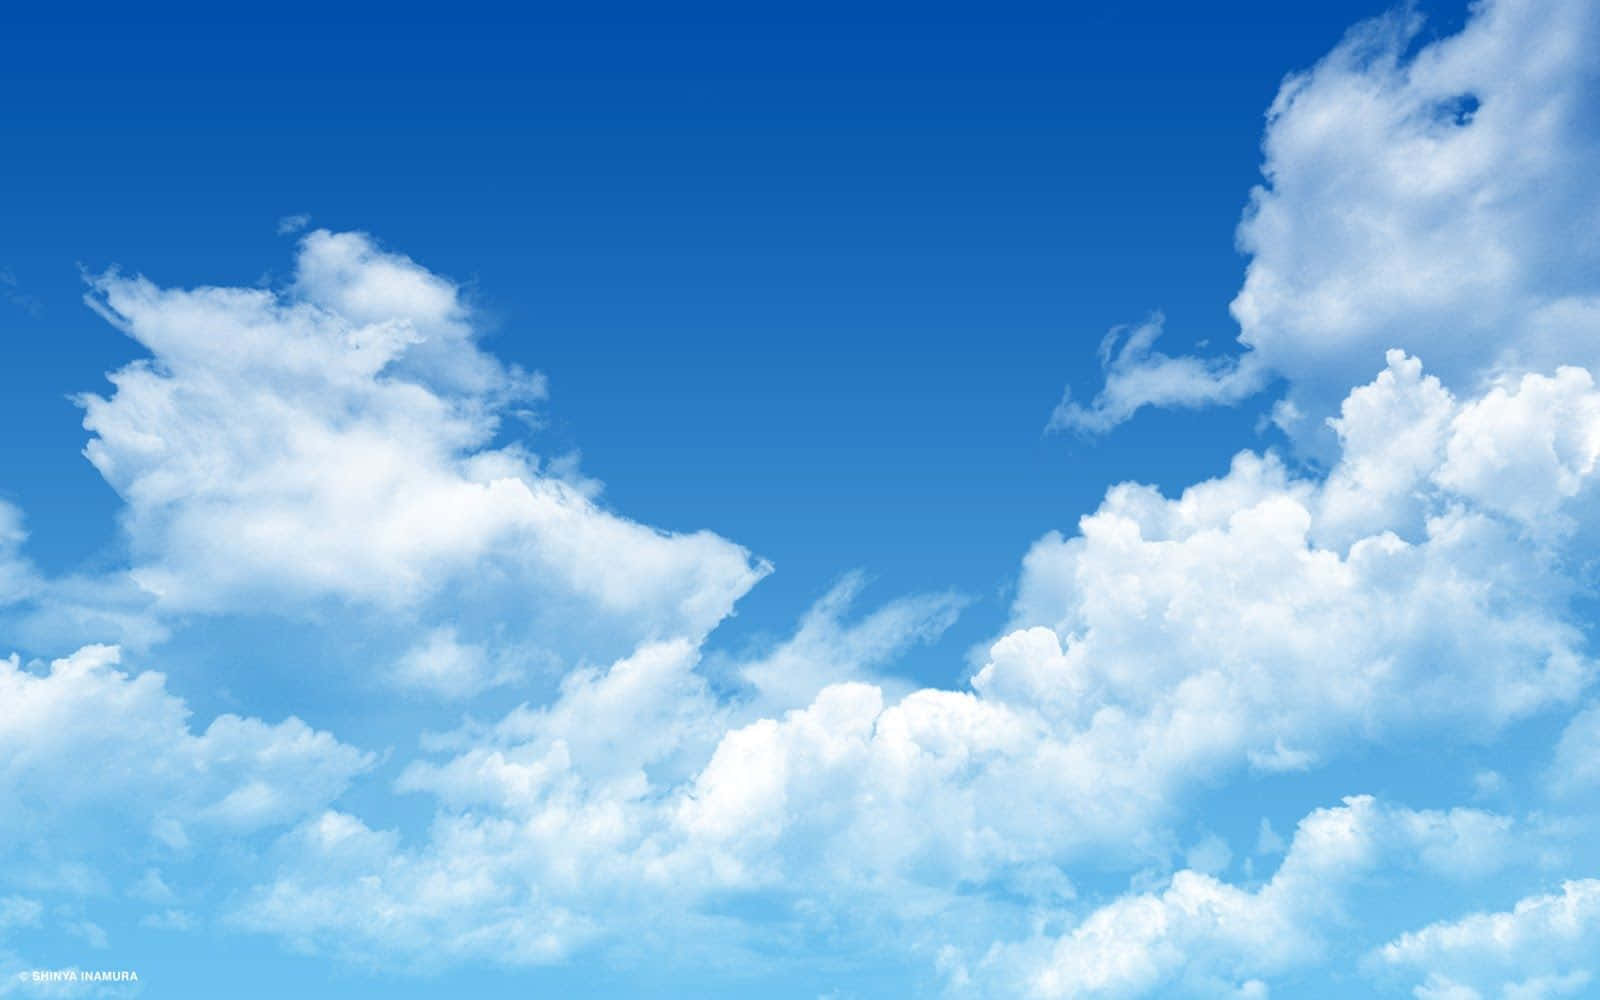 Hoheauflösung Himmel Flauschige Wolken Wallpaper